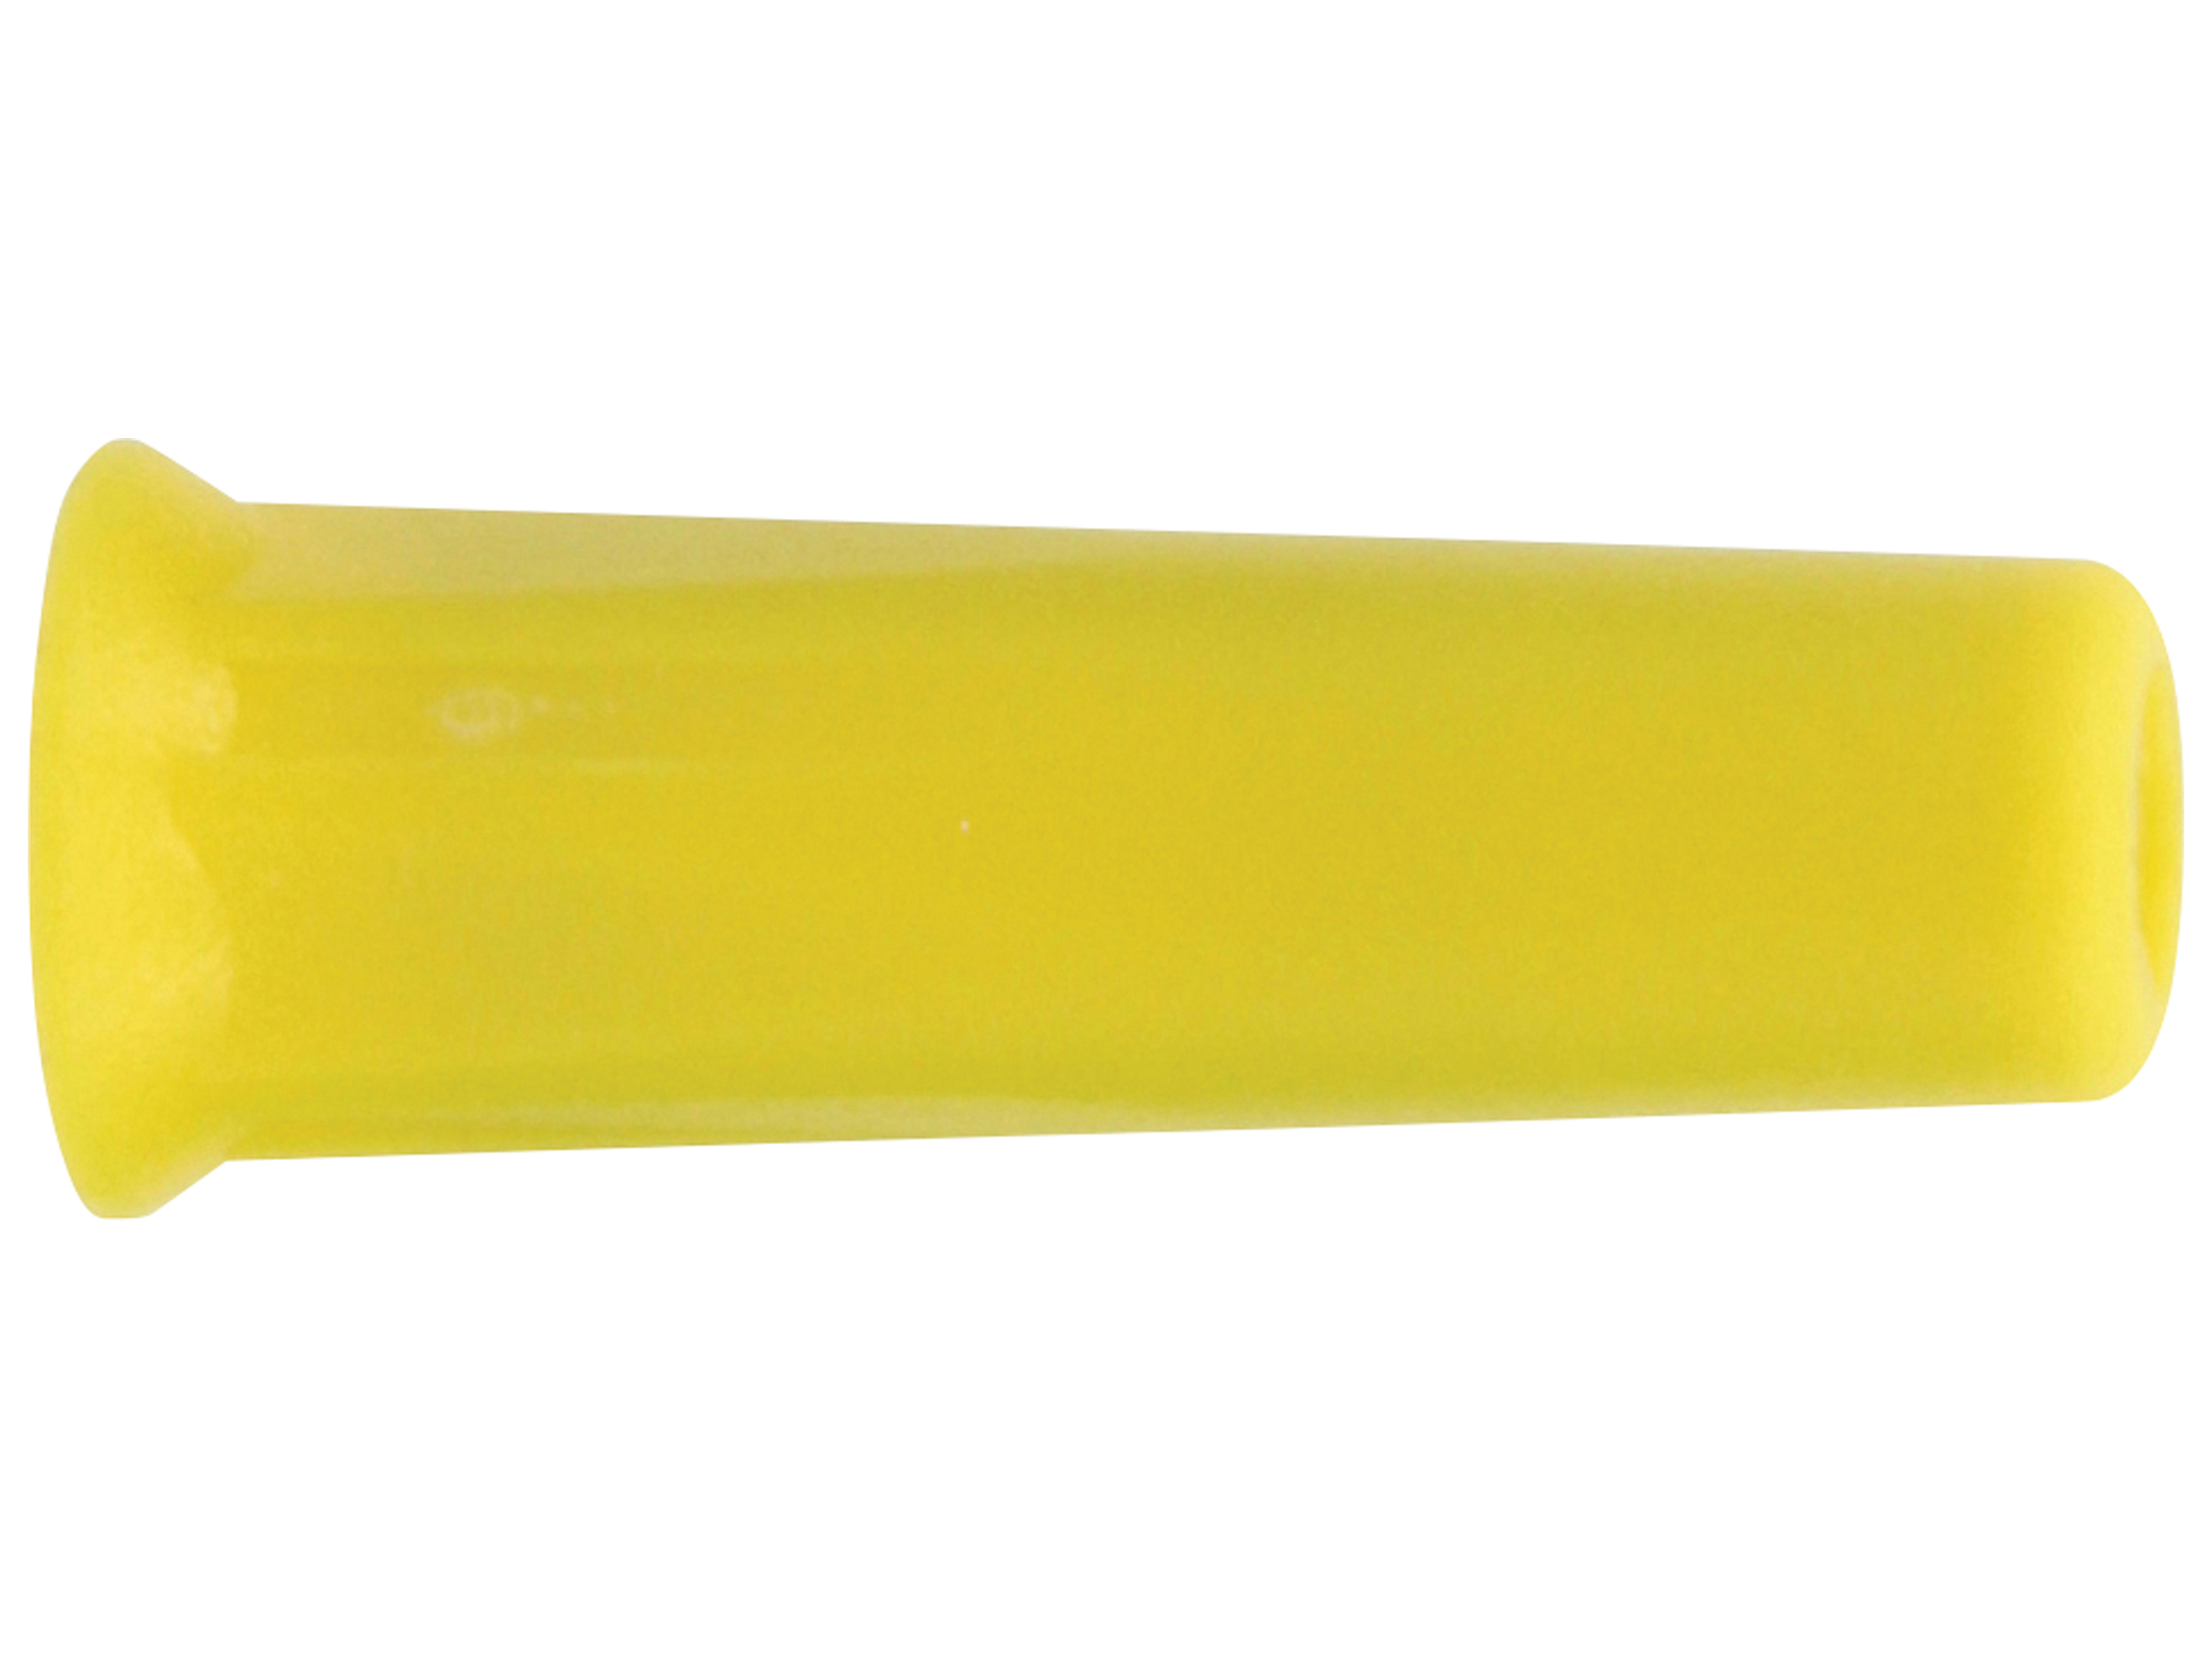 DONAU ELEKTRONIK Bananenkupplung, 4mm, gelb, 3013